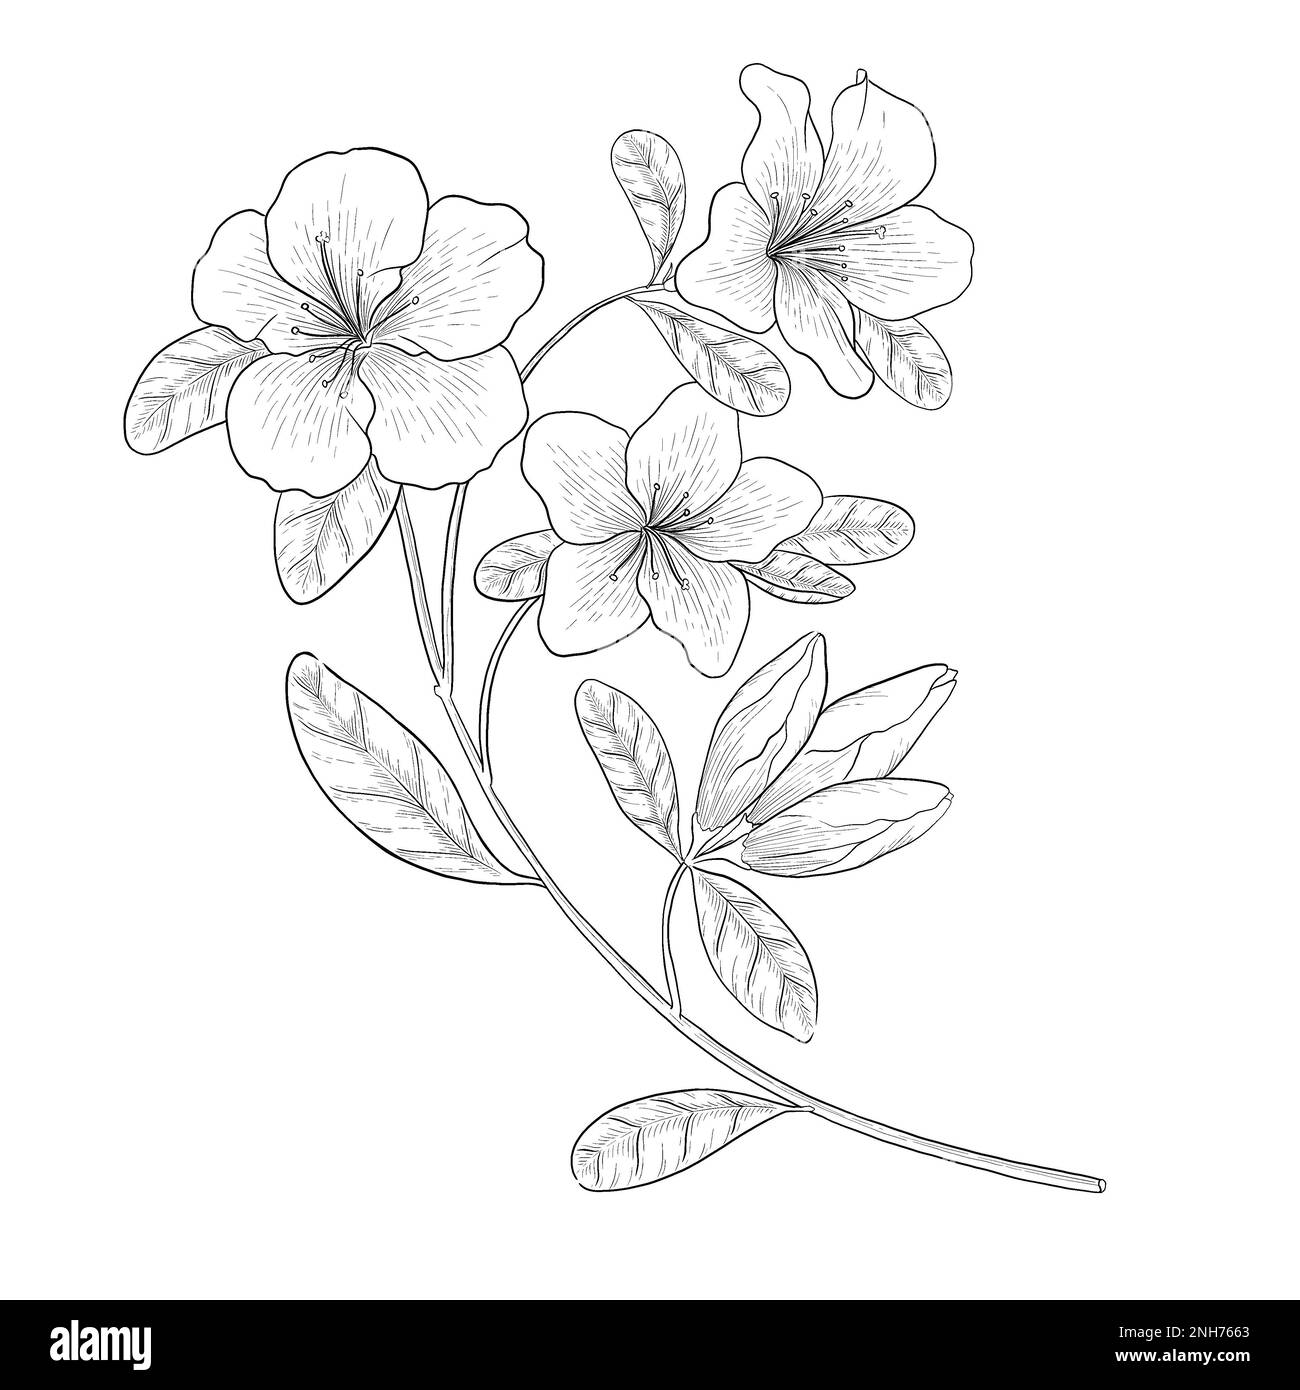 Botanische Darstellung des Azalea-Konturvektors. Strichzeichnungen digital gezeichnete Illustrationen. Stockfoto